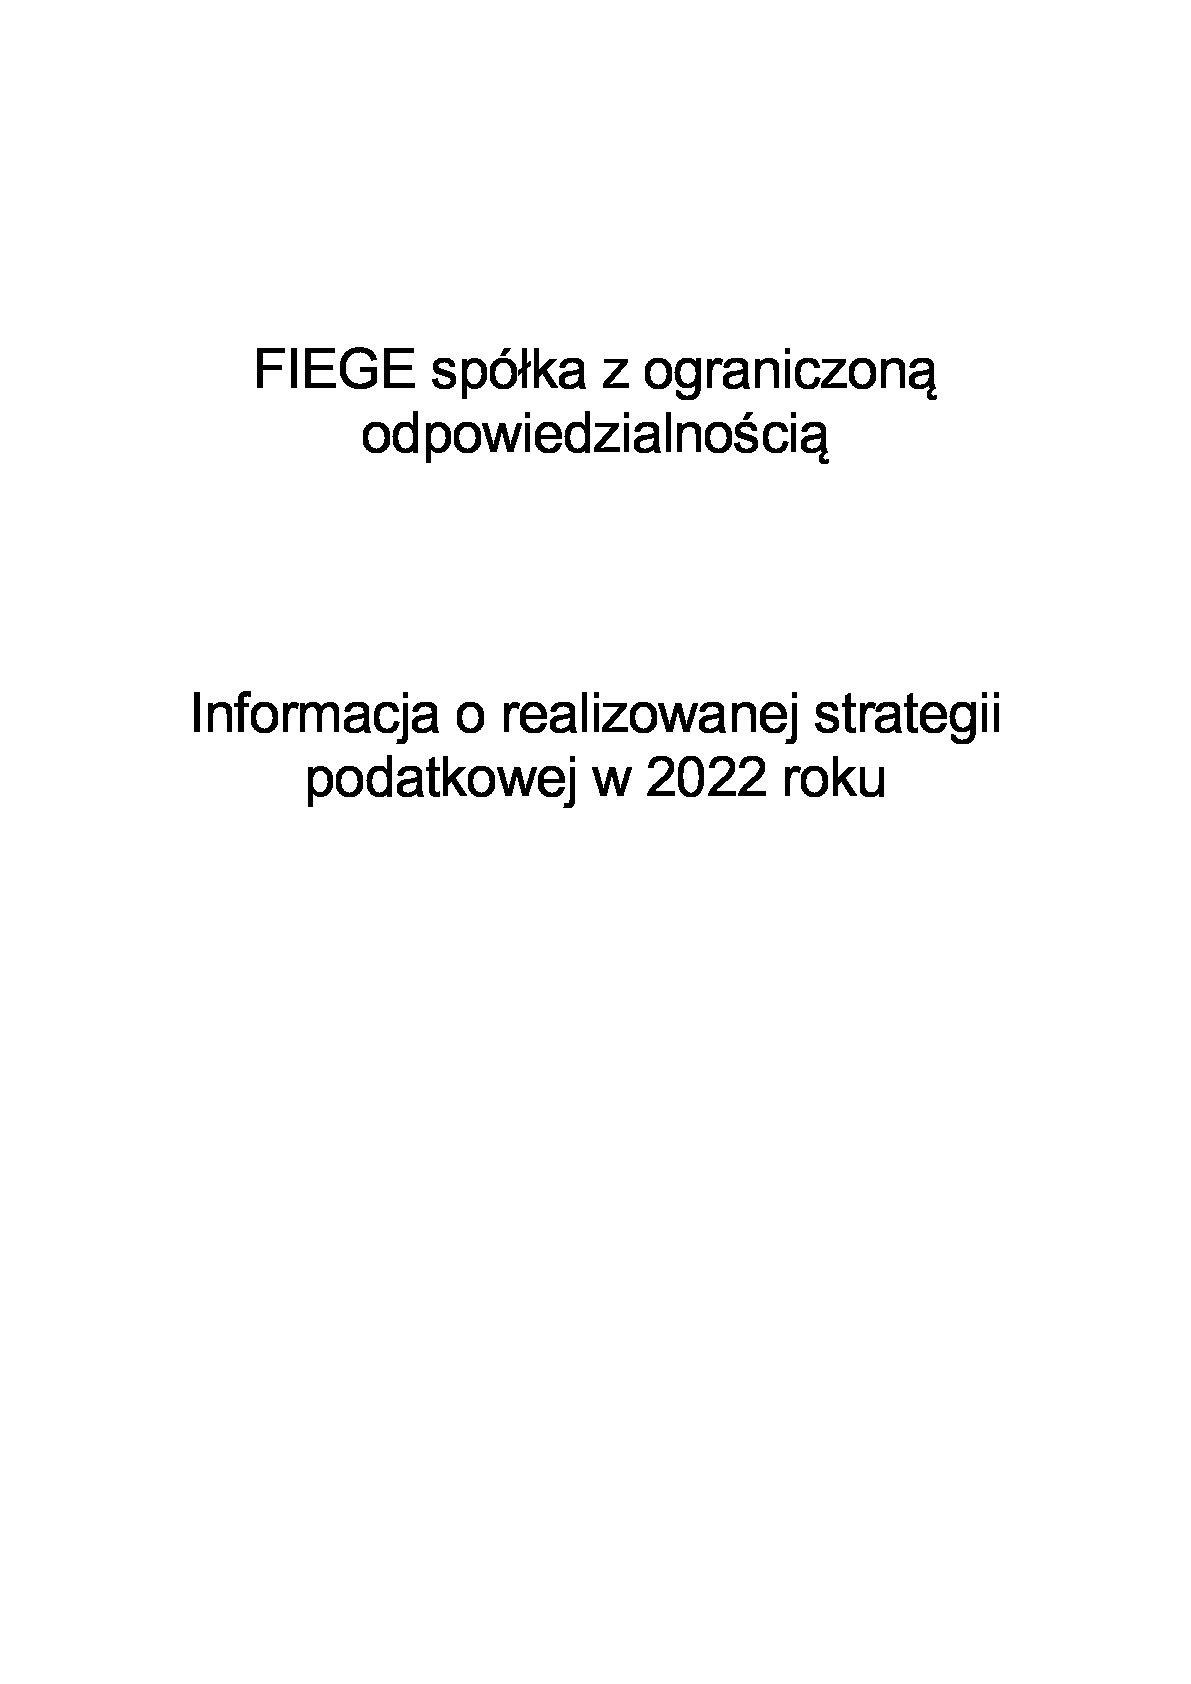 informacja-o-strategii_fiege-sp.-o.o._2022.pdf